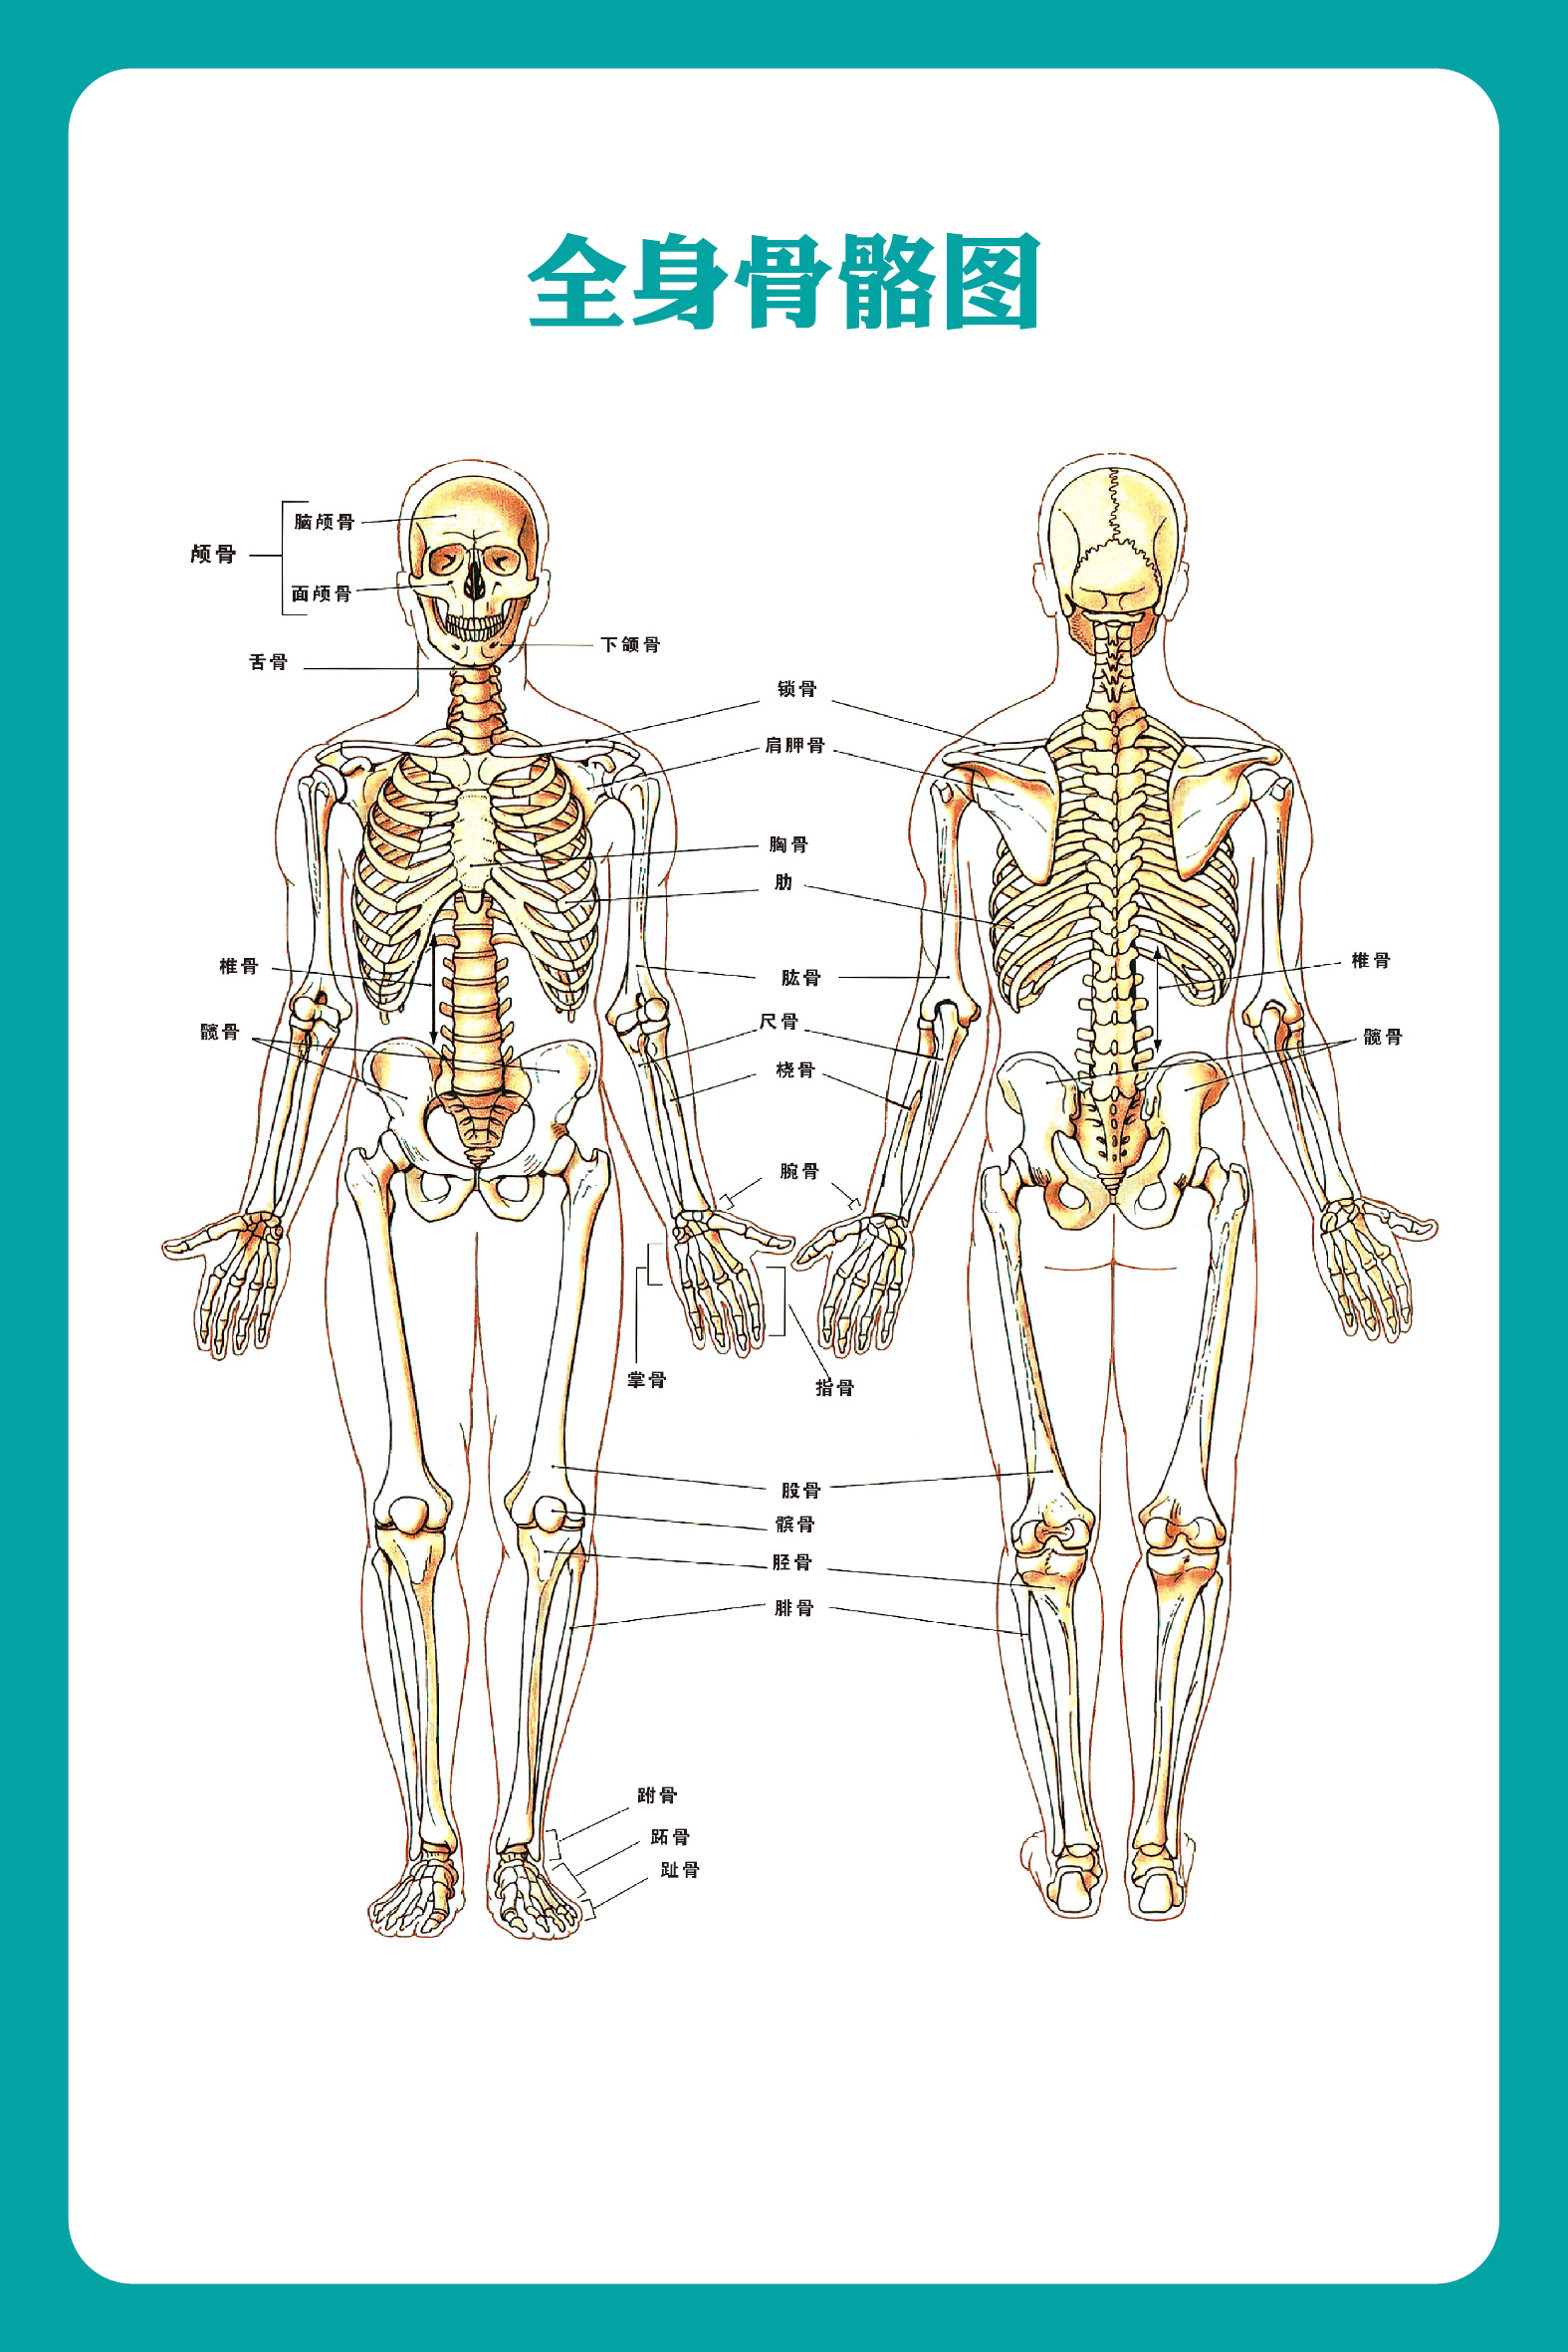 哪里有高清的人体解剖学图片? - 知乎